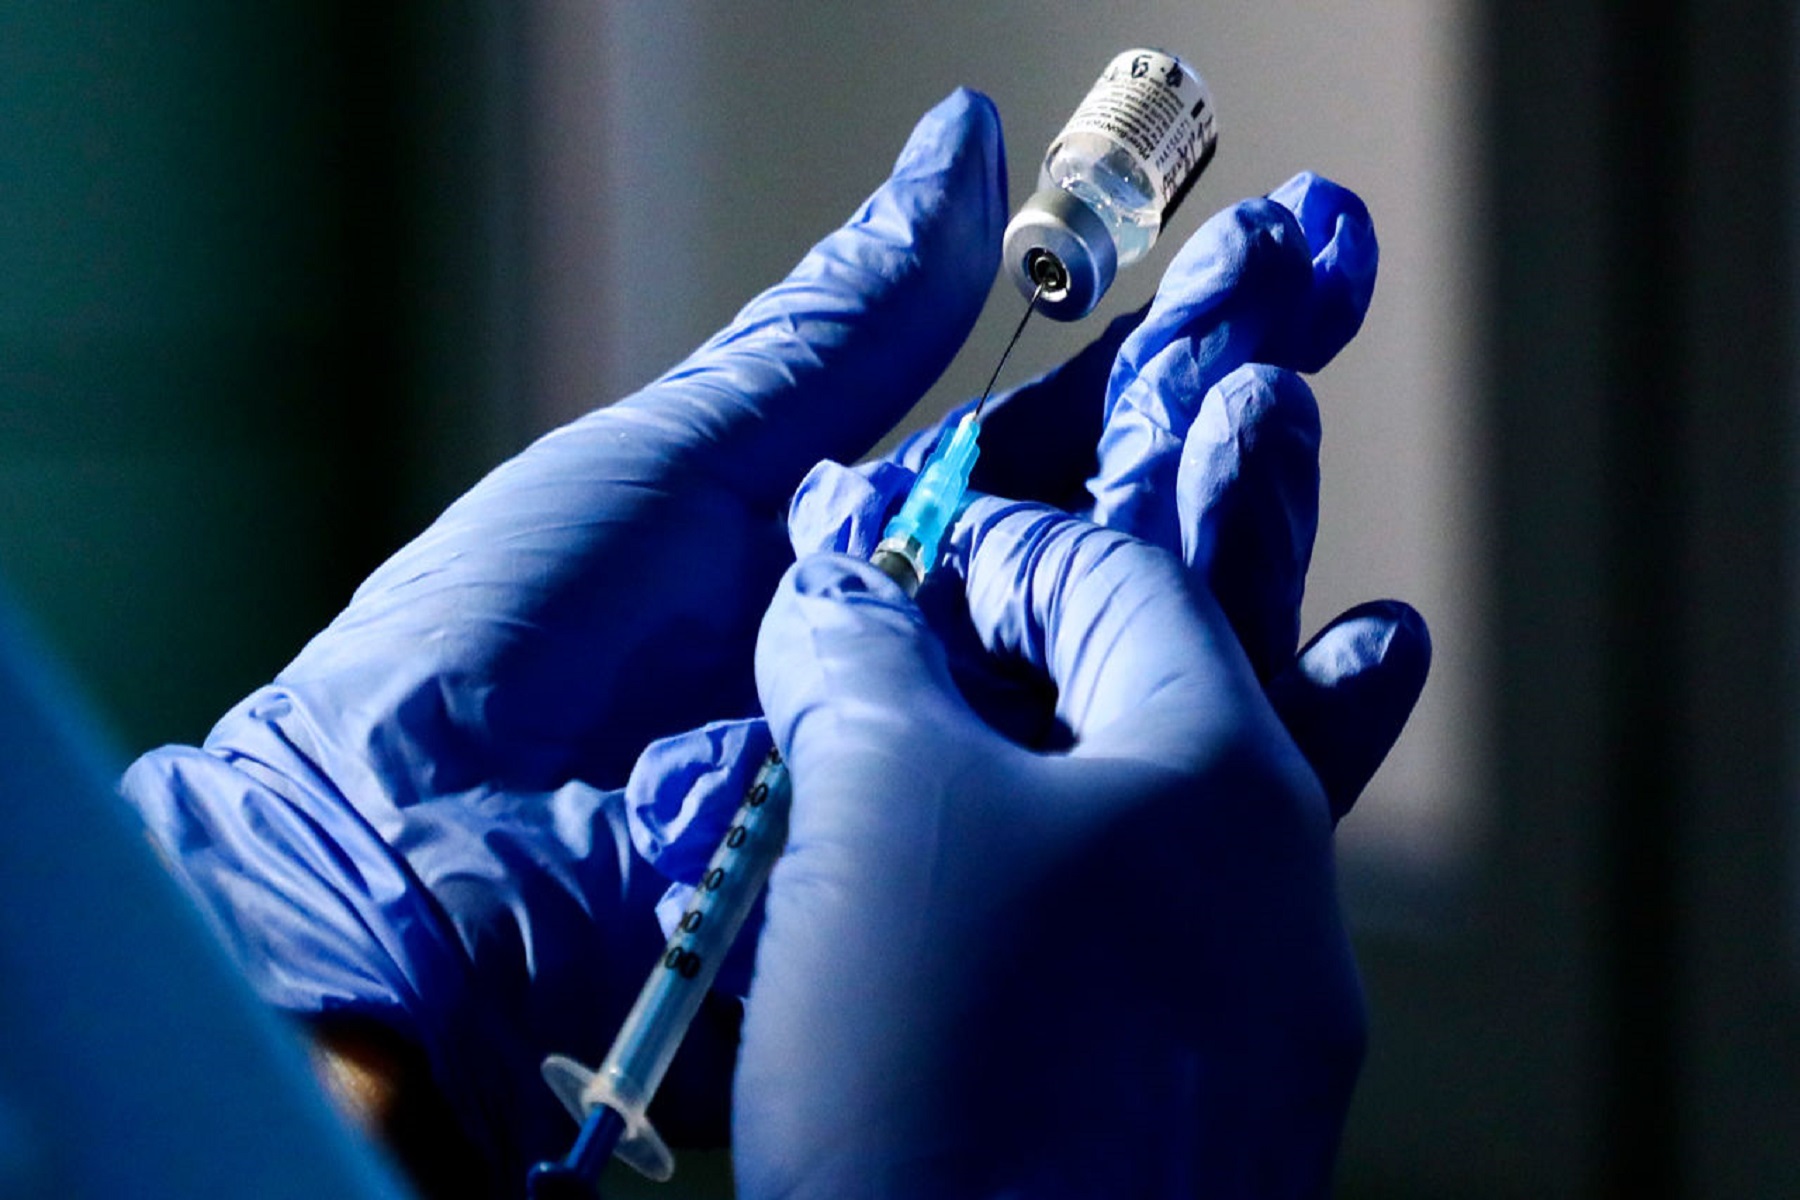 Ηνωμένο Βασίλειο: Μελετάται αν η χρήση διαφορετικών εμβολίων ενισχύει την ανοσοαπόκριση